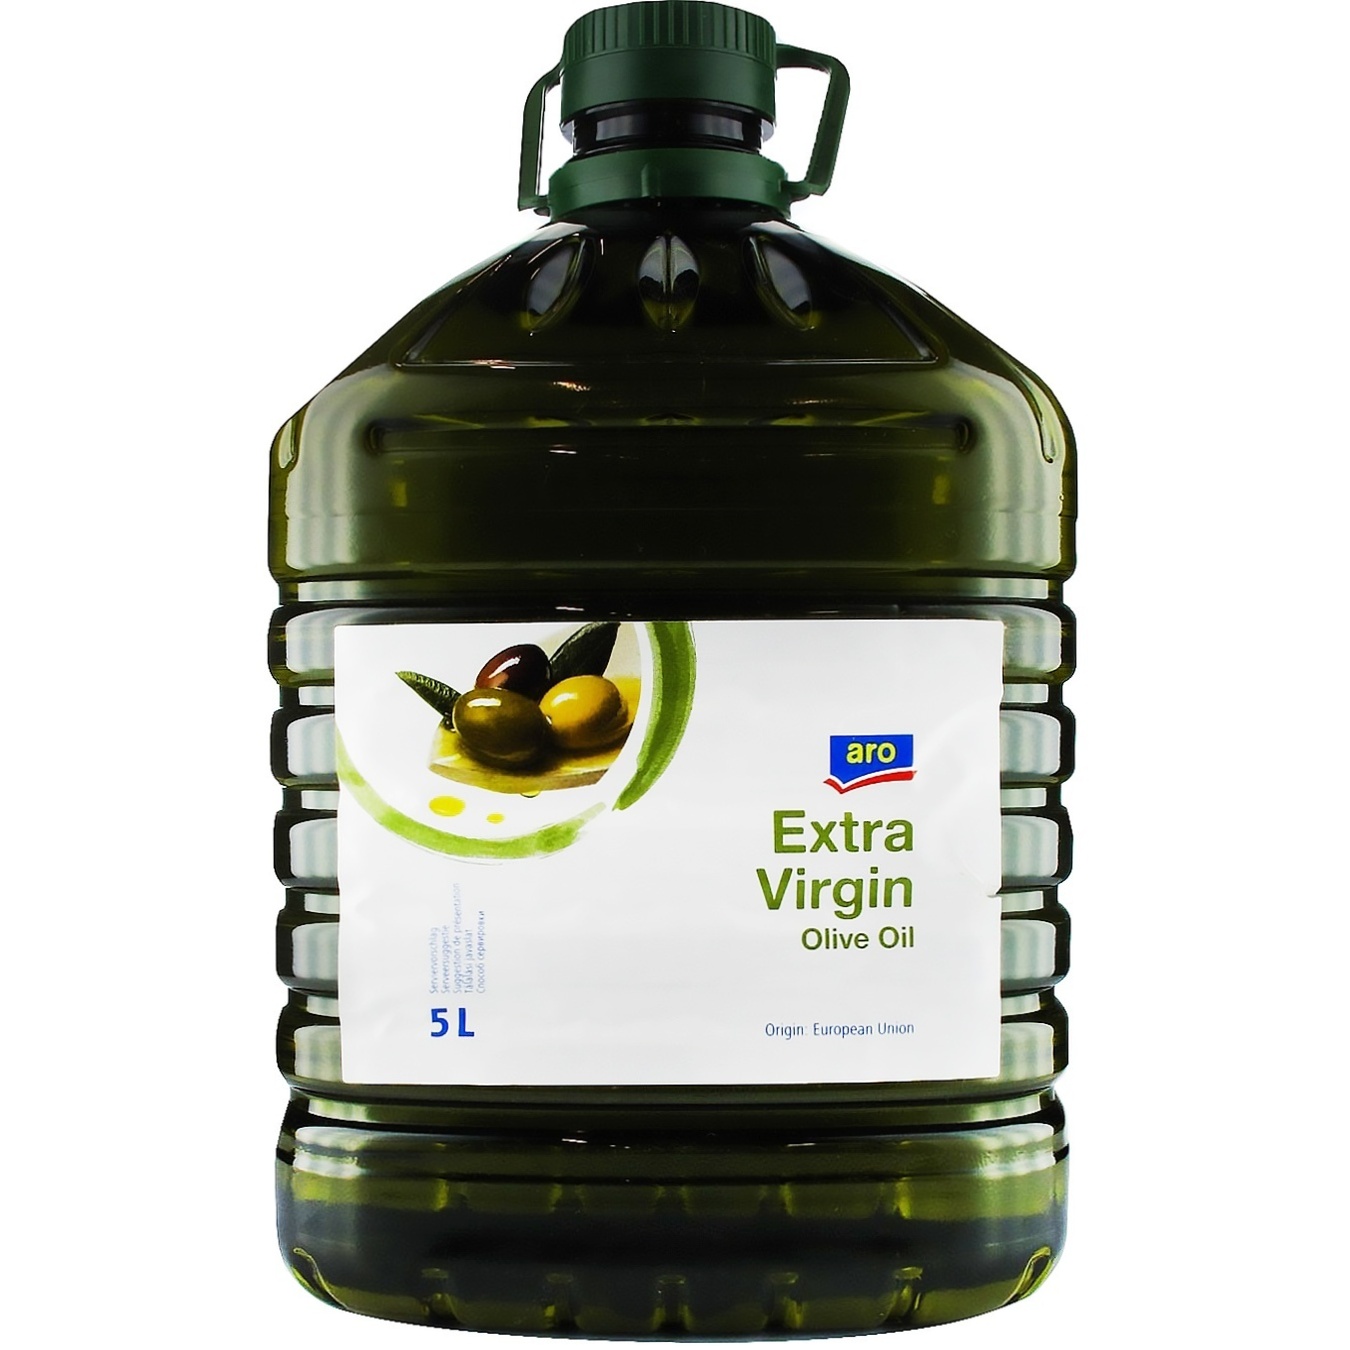 Метро оливковое масло. Оливковое масло Extra Virgin 5 л. Масло оливковое 5 л Экстра Вирджин. Масло оливковое 5 л Аро. Aro масло оливковое Extra Virgin, 2л.